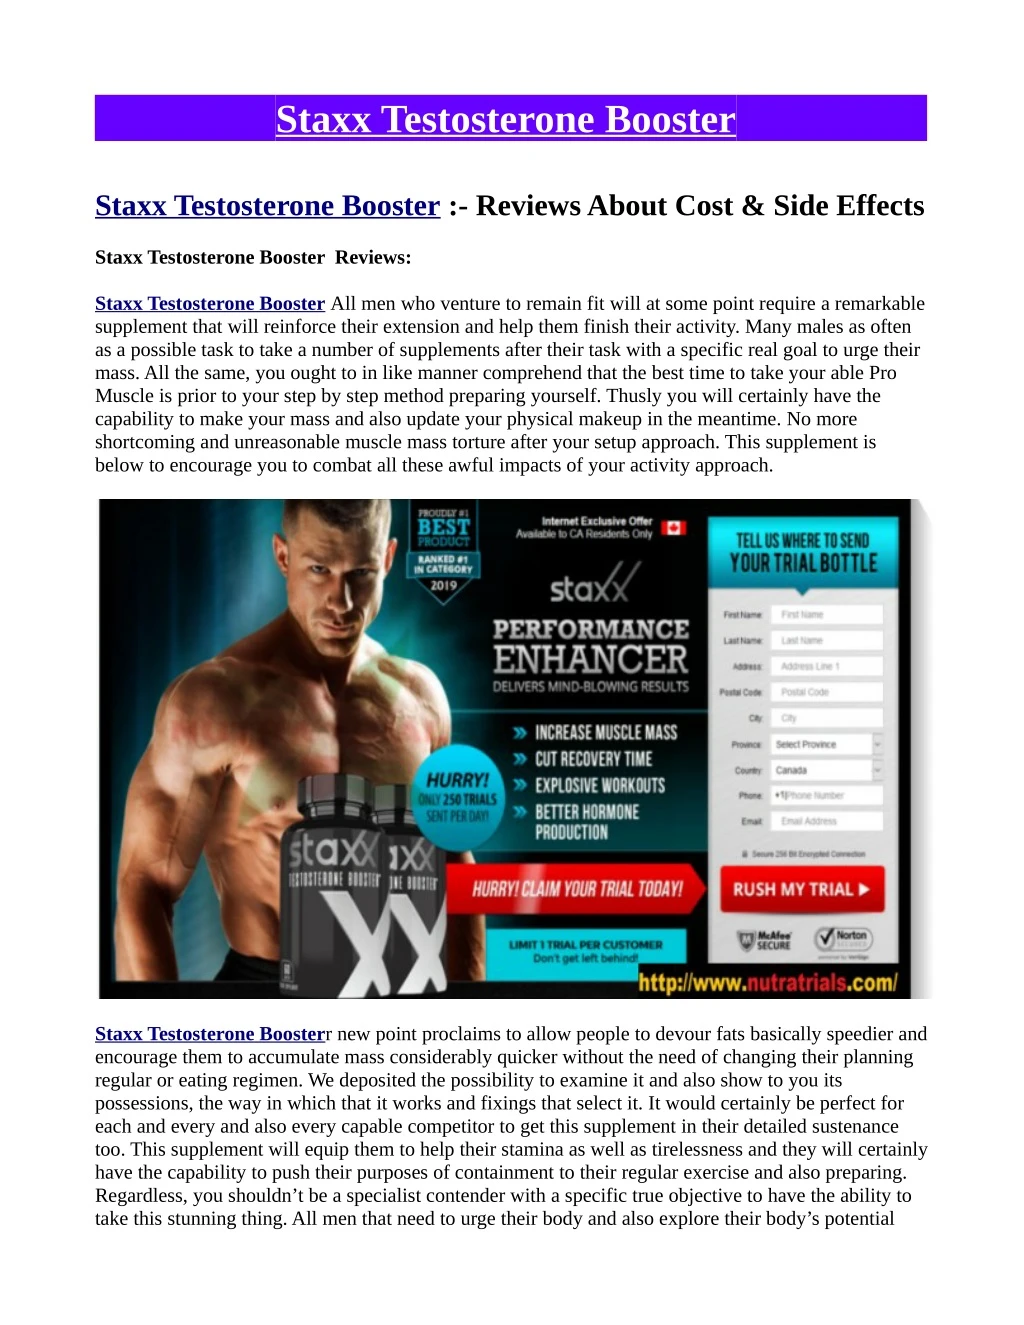 staxx testosterone booster